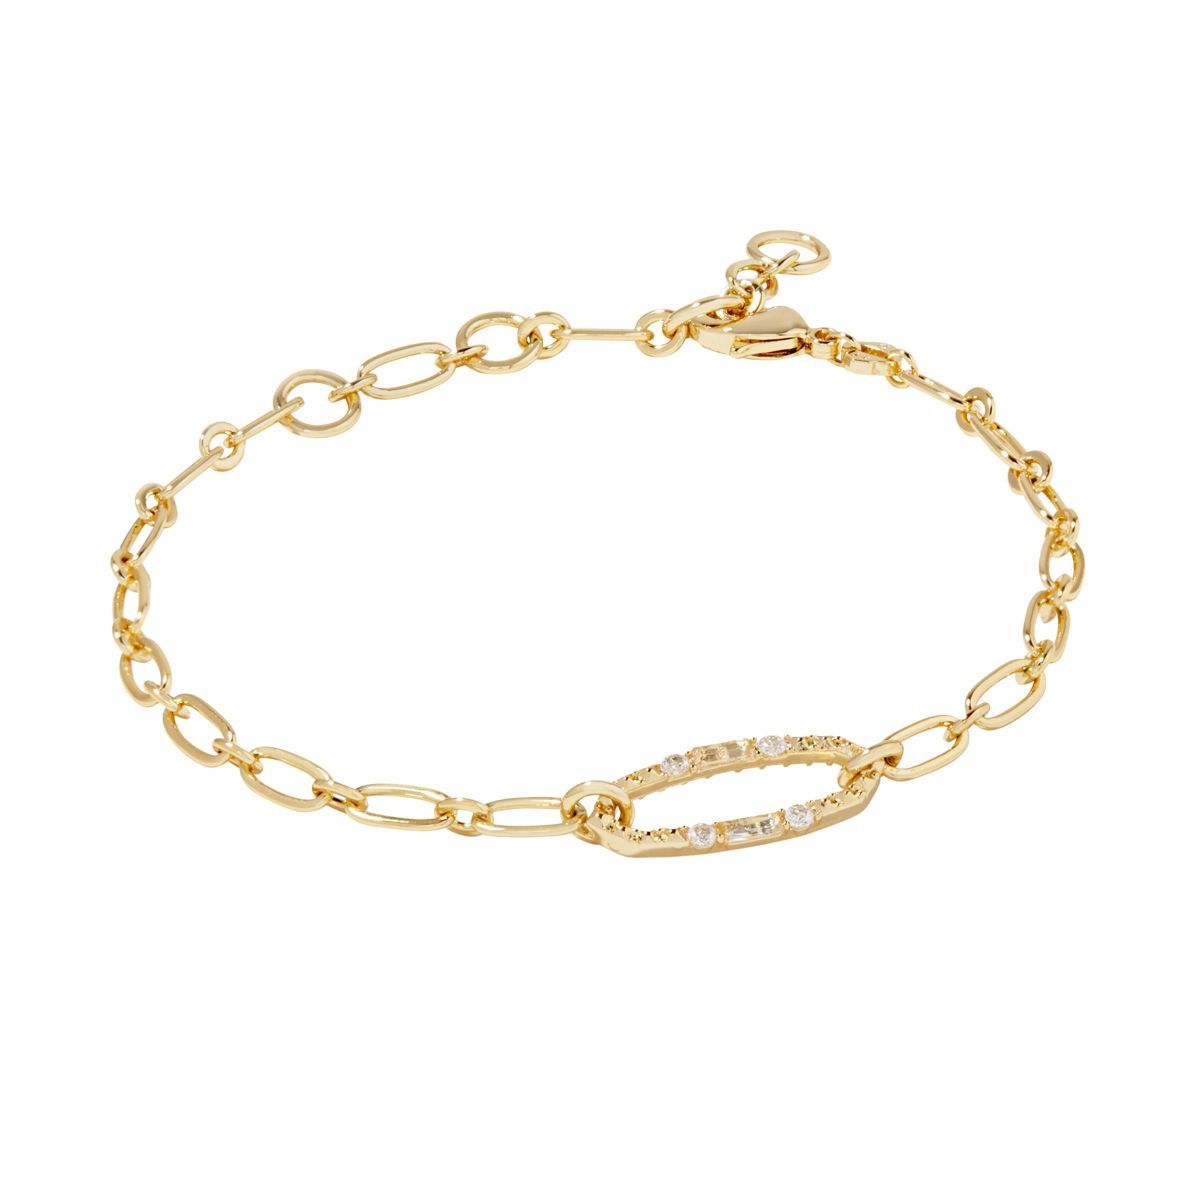 Kendra Scott Scarlett 14K Gold Over Brass Chain Bracelet - Gold | Target